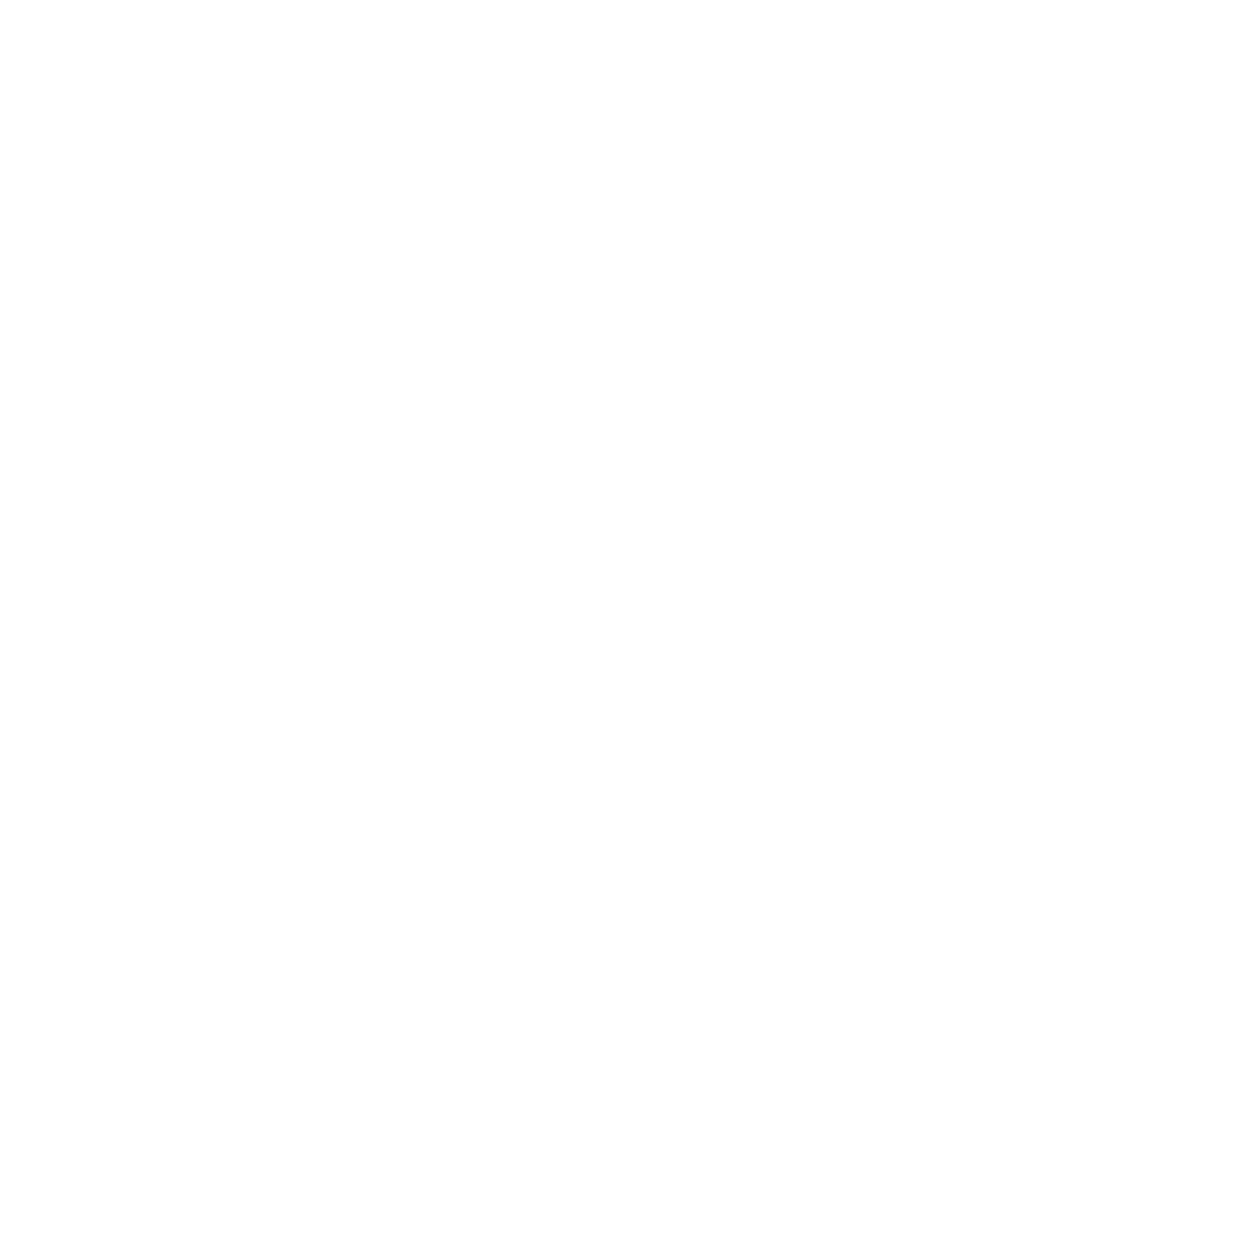 poboxdomains.com1